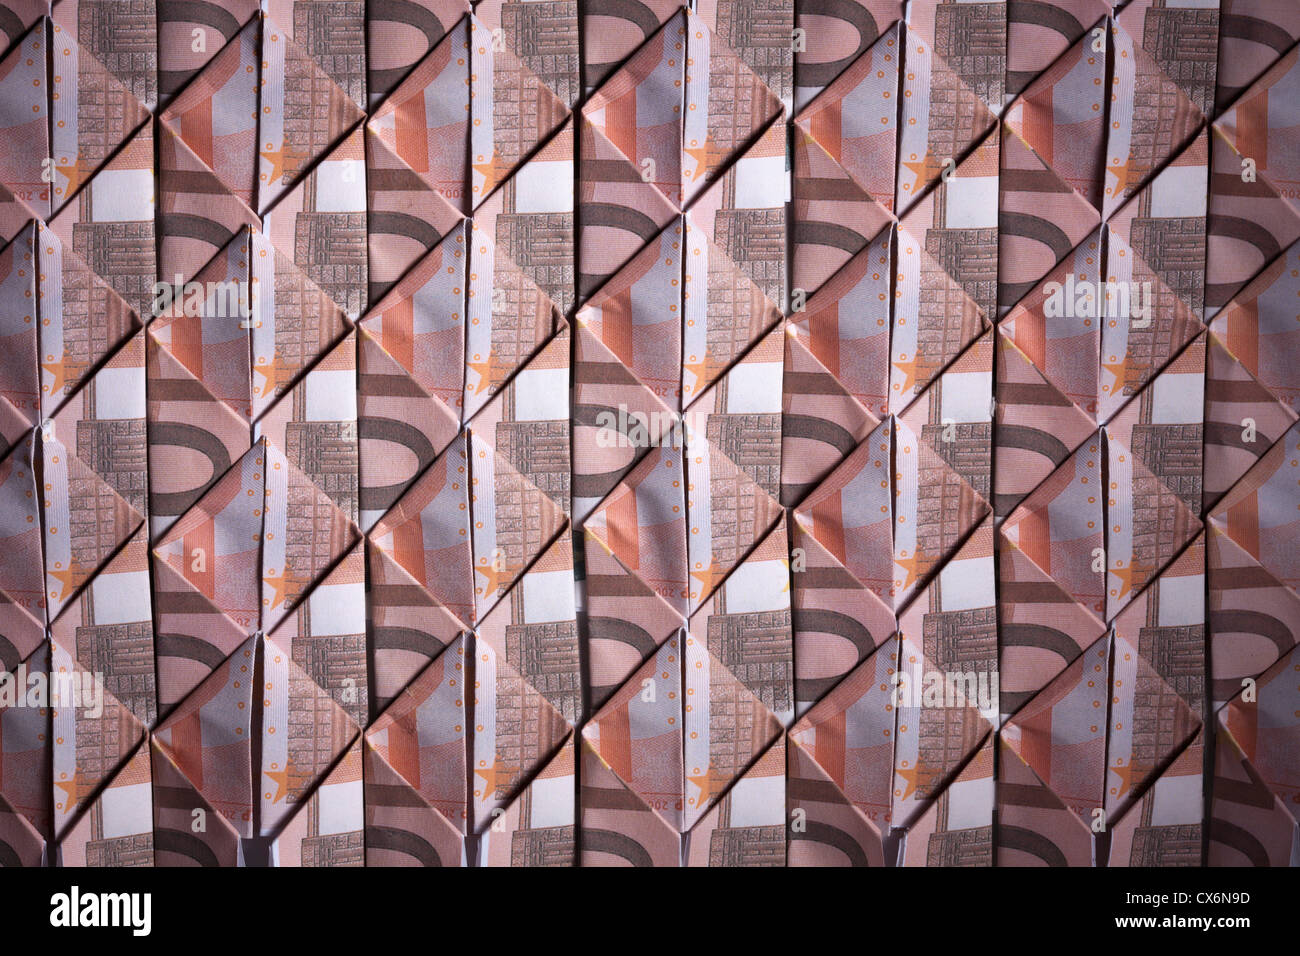 Dieci banconote in euro ripiegato in rombi e Interwoven, full frame Foto Stock